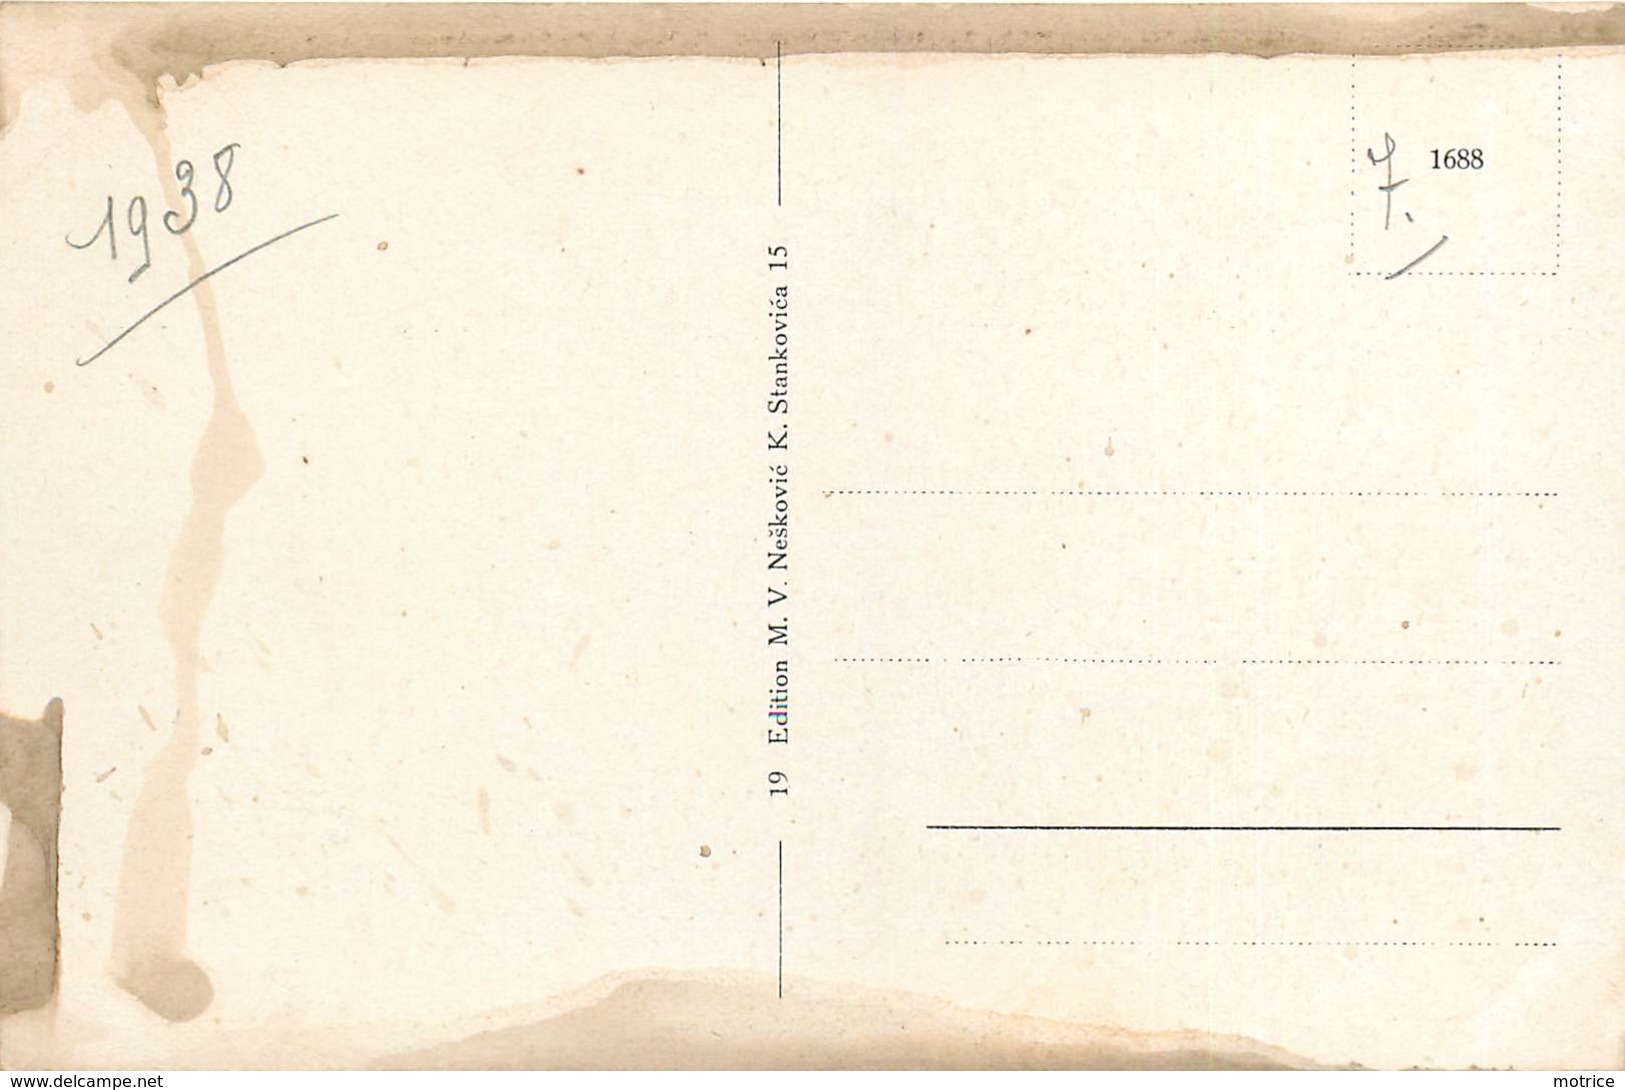 BELGRADE - lot de sept cartes diverses de la ville (1938).